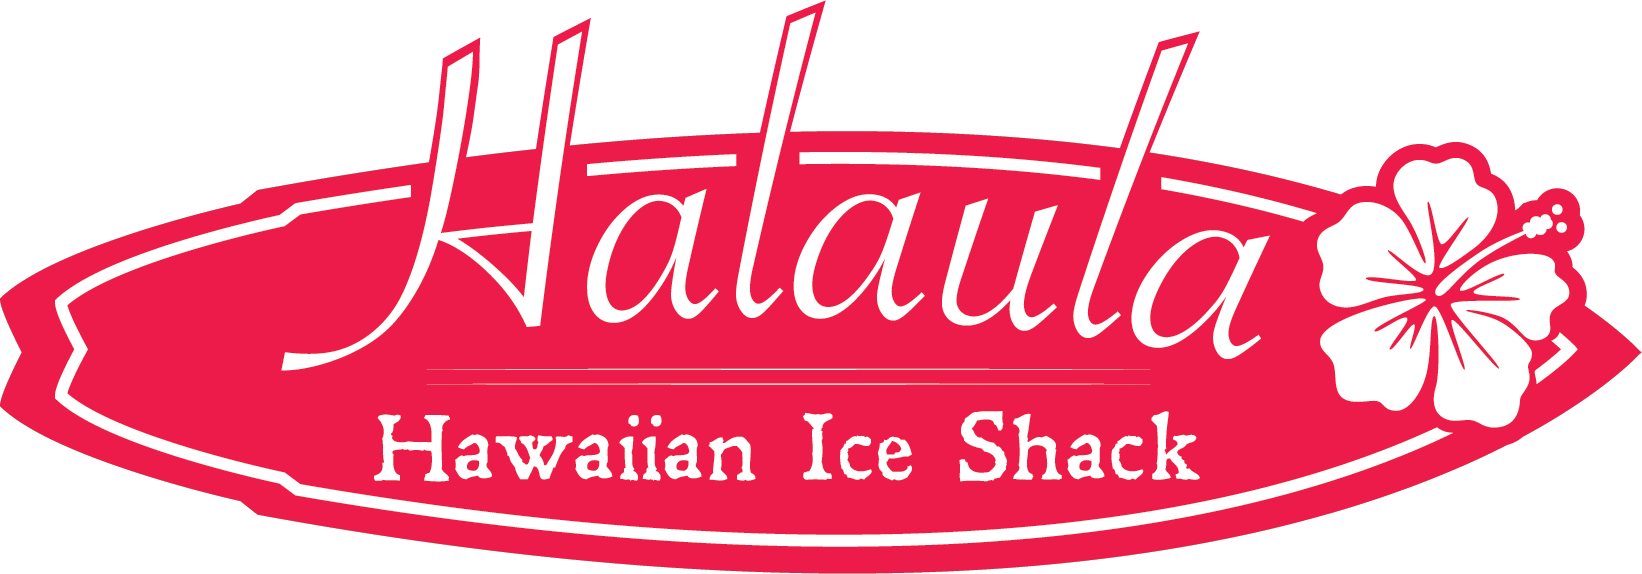 Halaula Hawaiian Ice Shack